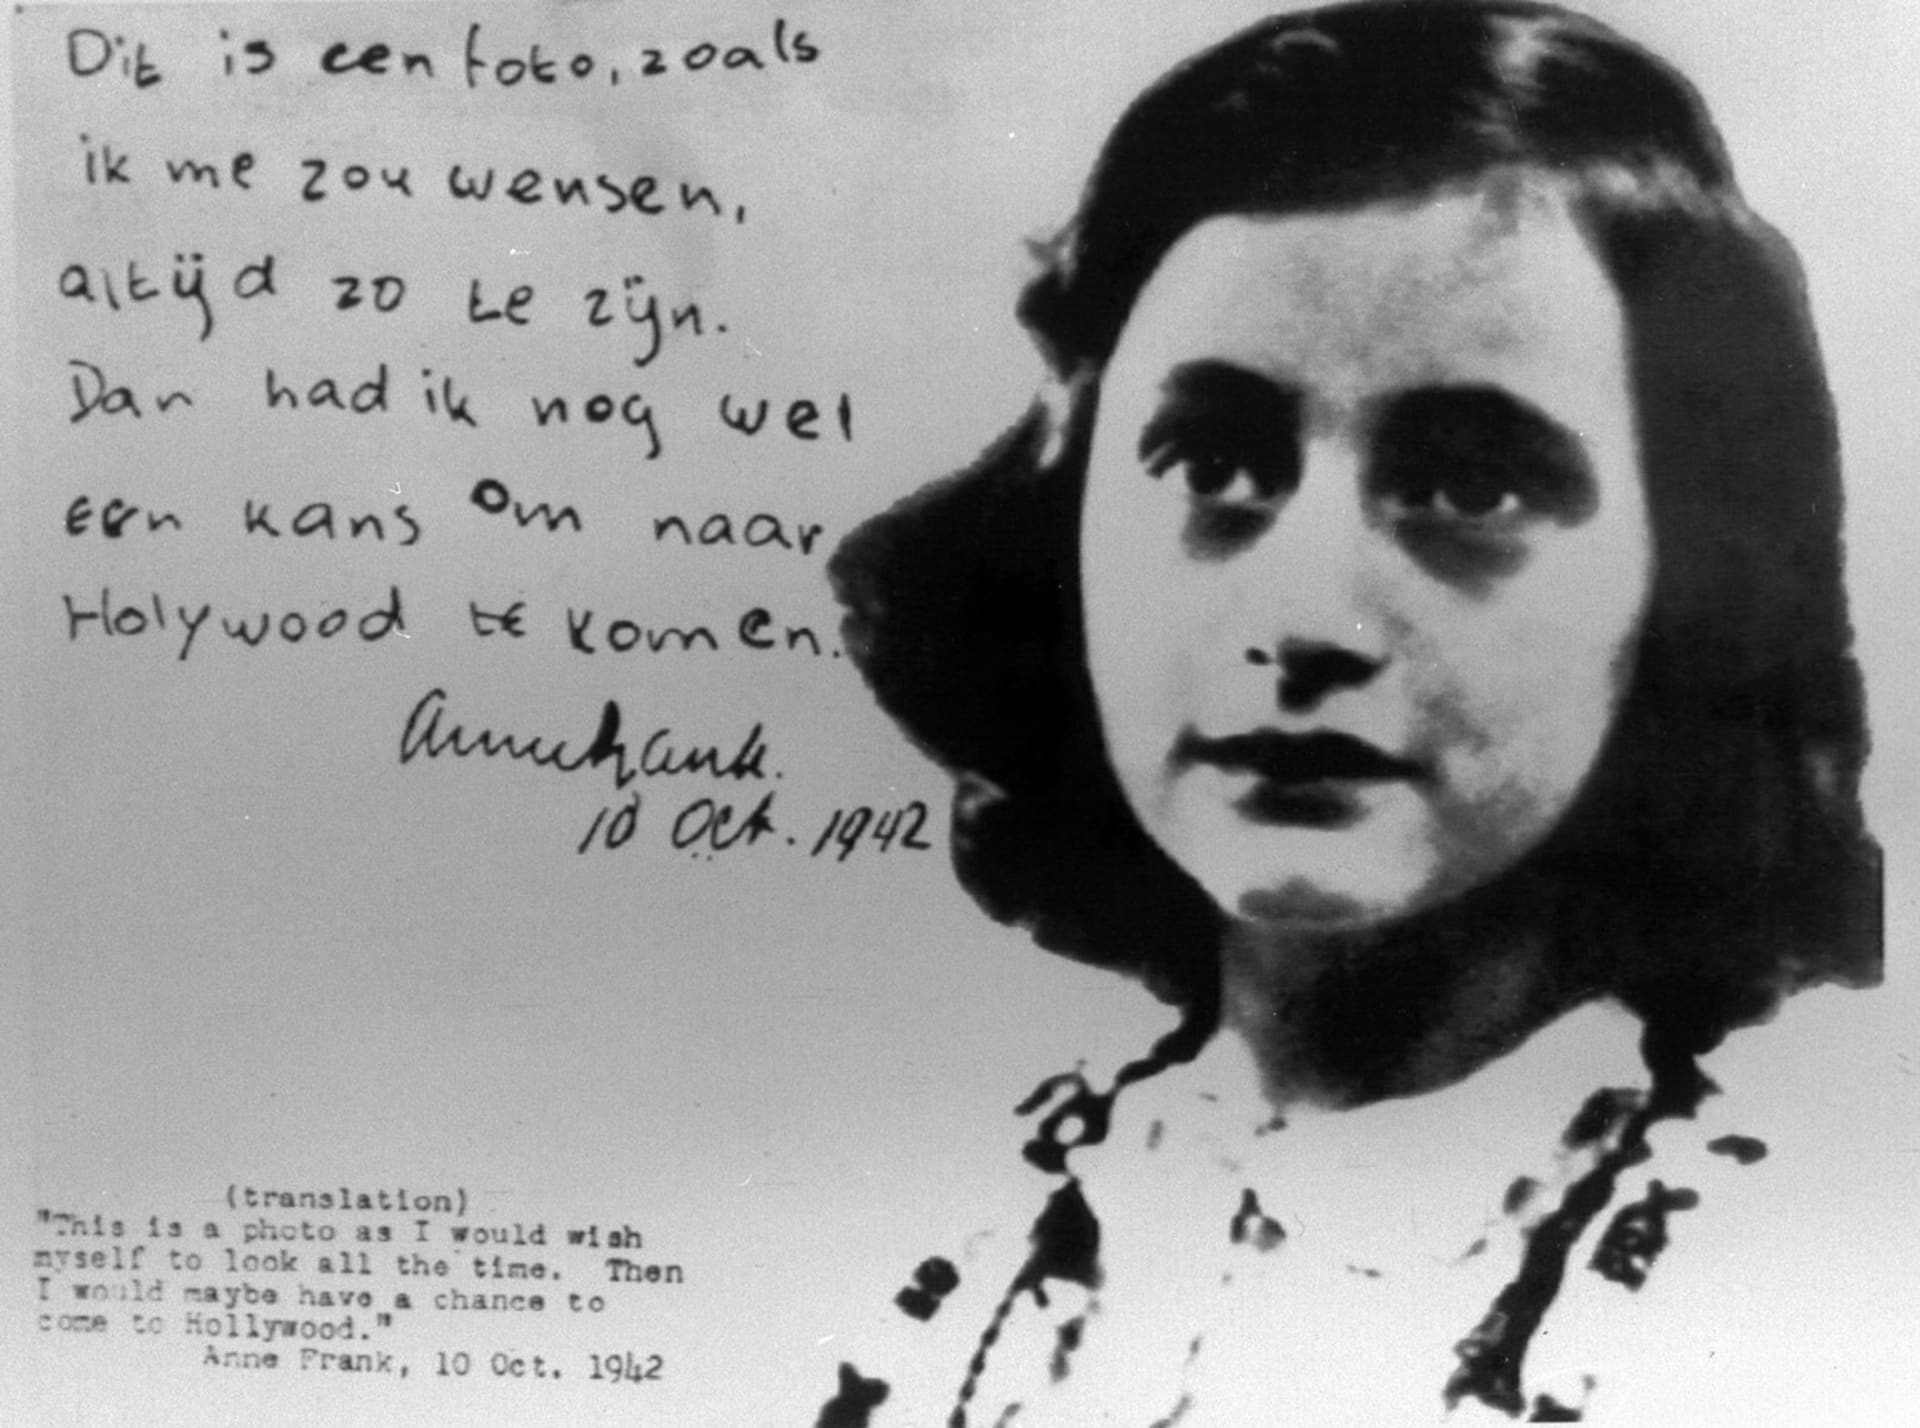 Anne Franková zemřela v koncentračním táboře na tyfus těsně před osvobozením